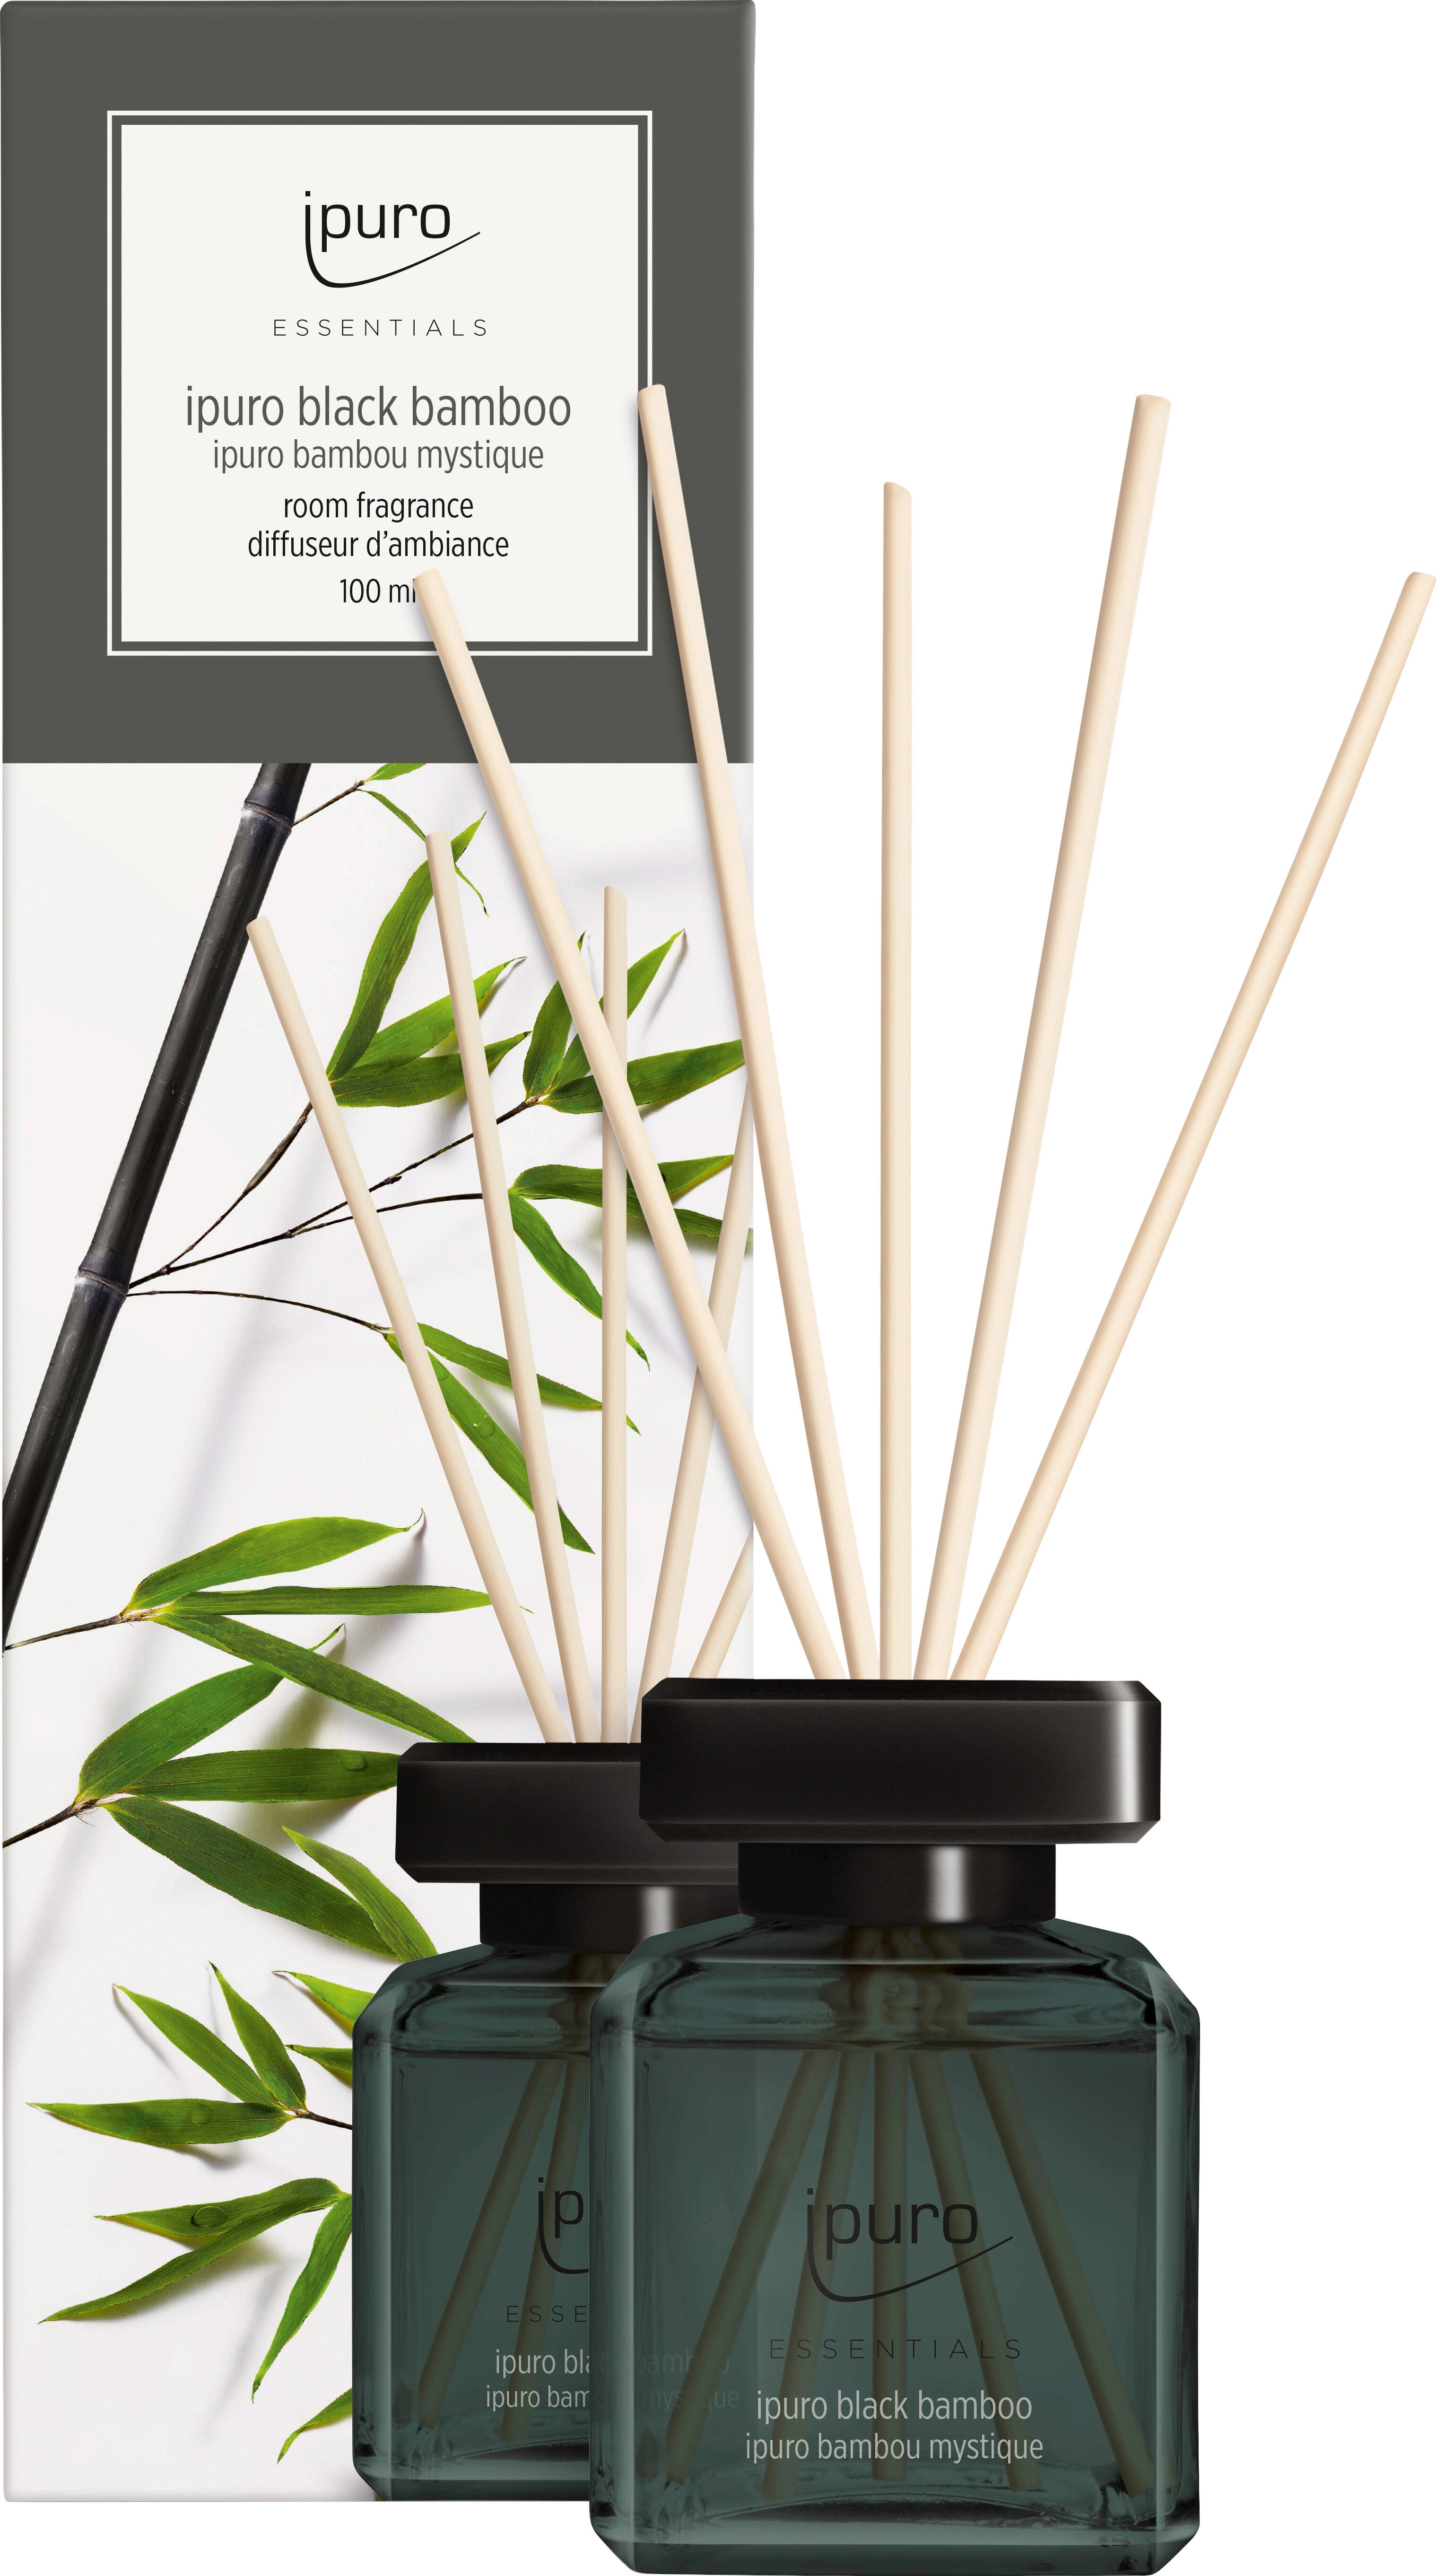 ipuro Raumduft Essantials Black Bamboo 100 ml kaufen bei OBI